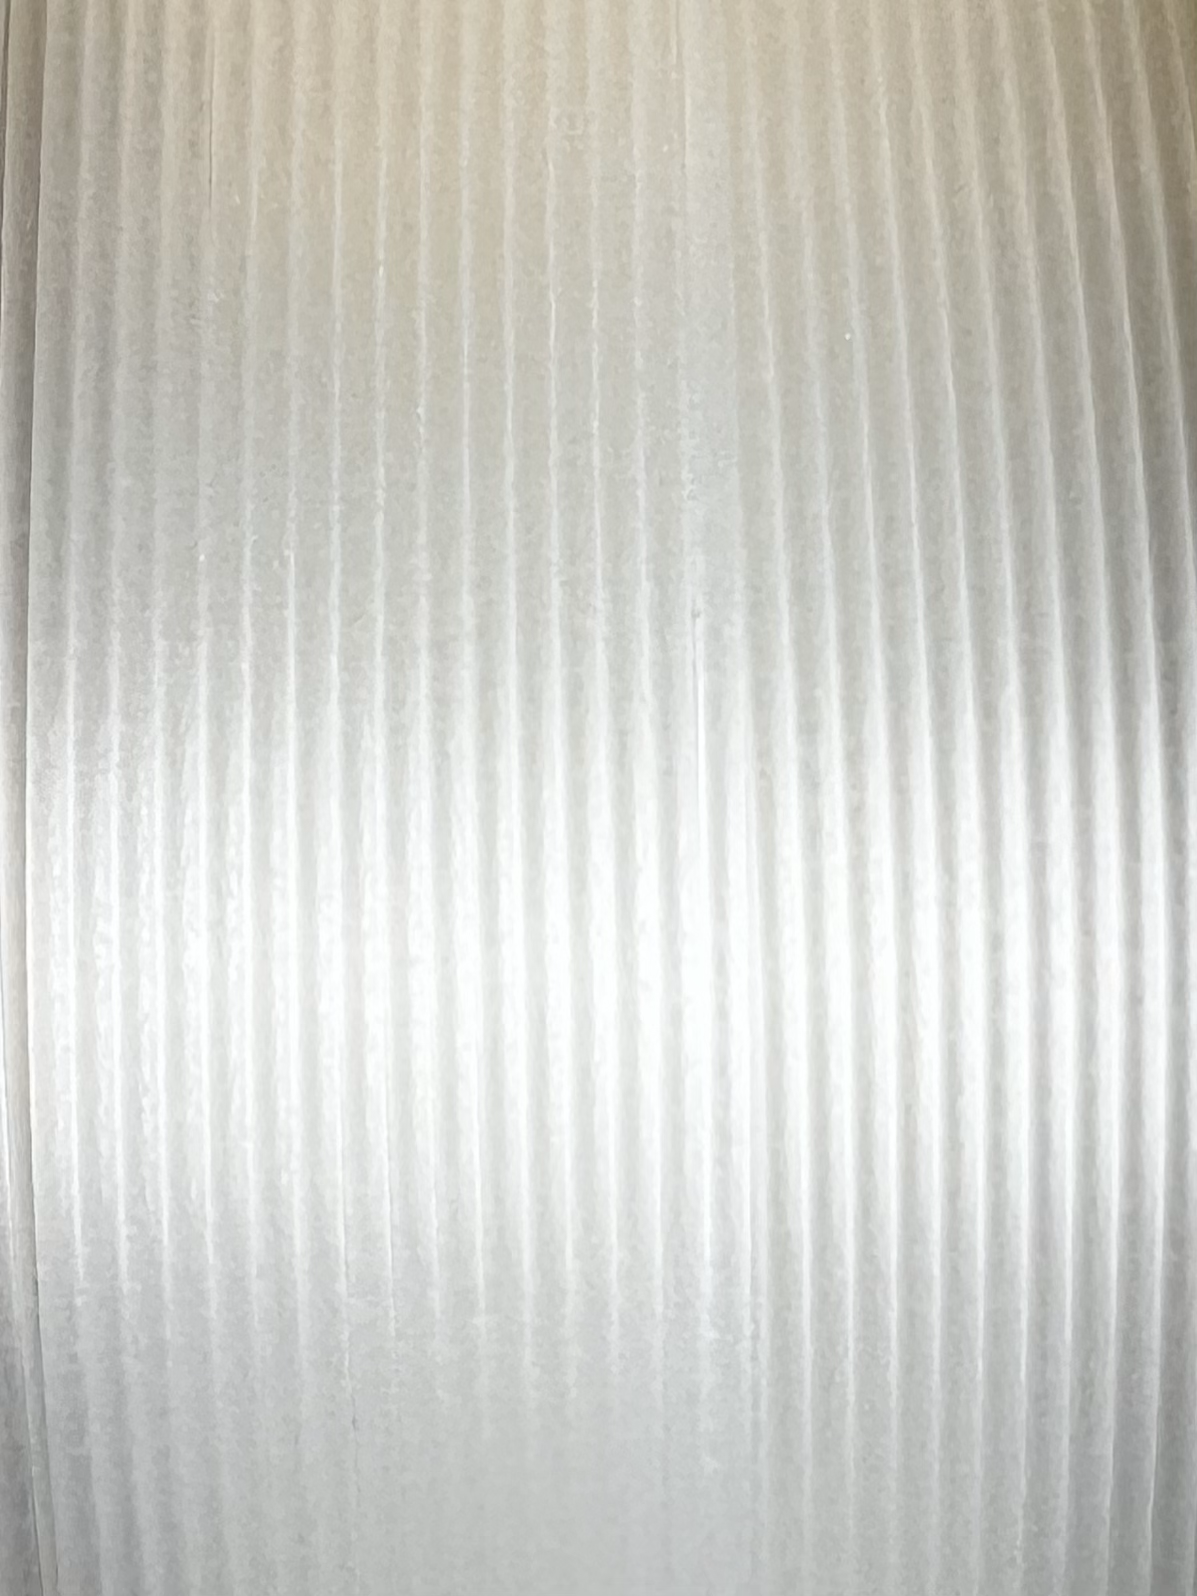 PLA filament ABAFLEX natural, 1.75 ± 0.019 mm, 750g, REFILL 60mm